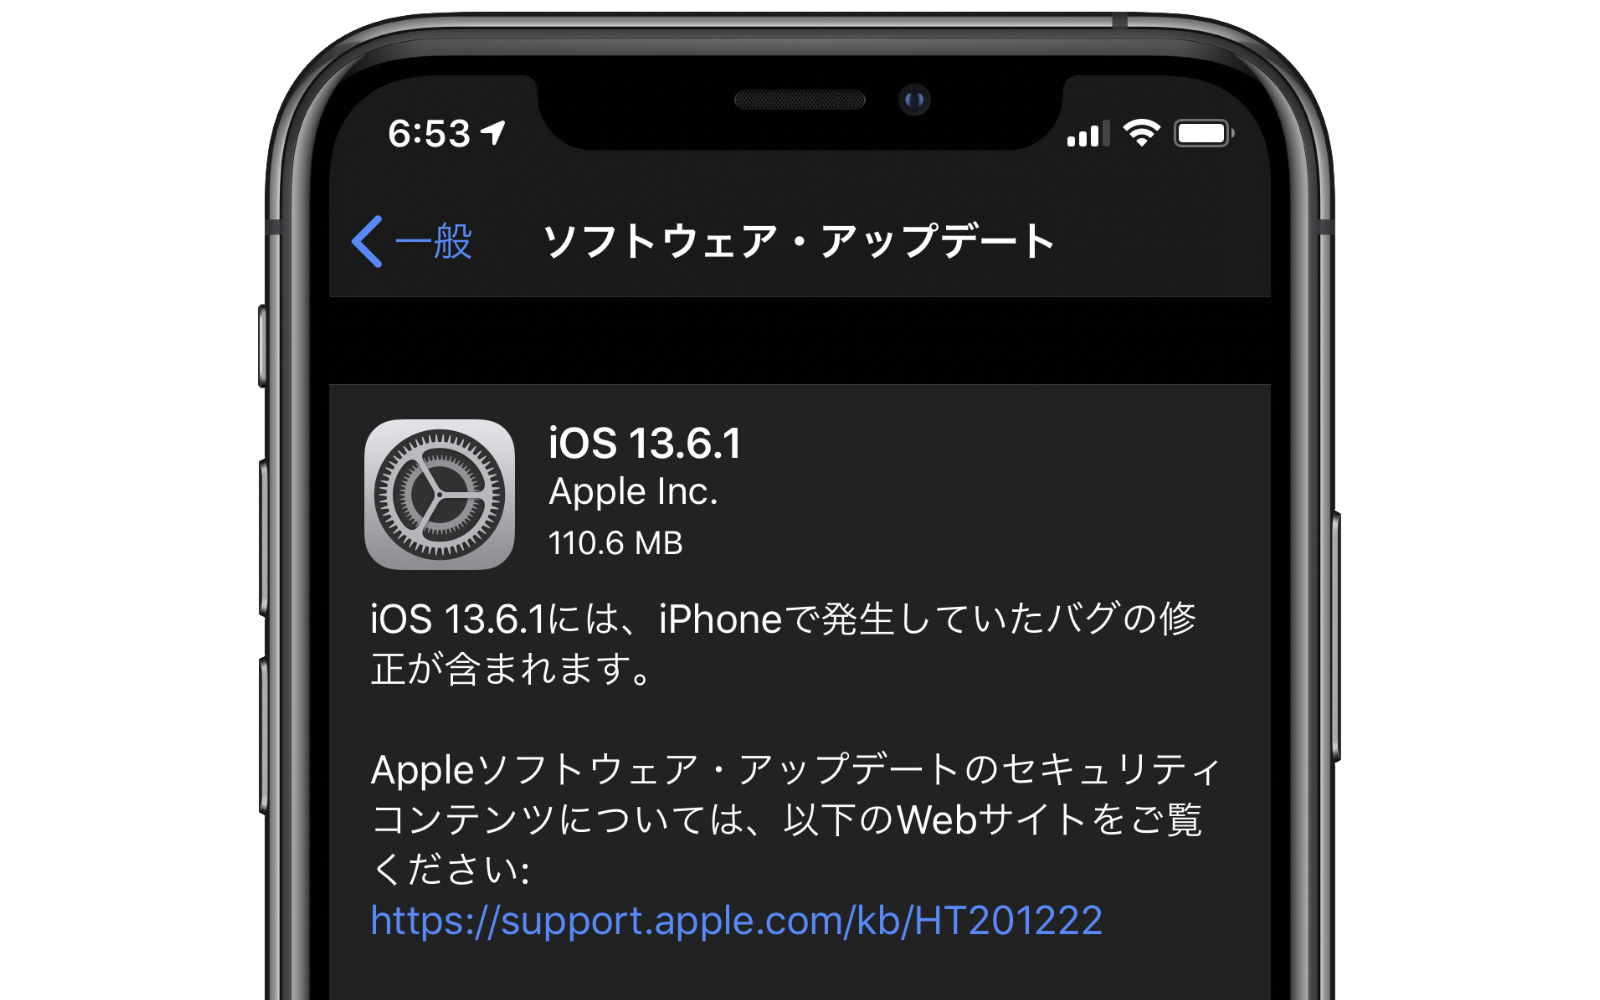 IOS13 6 1 update